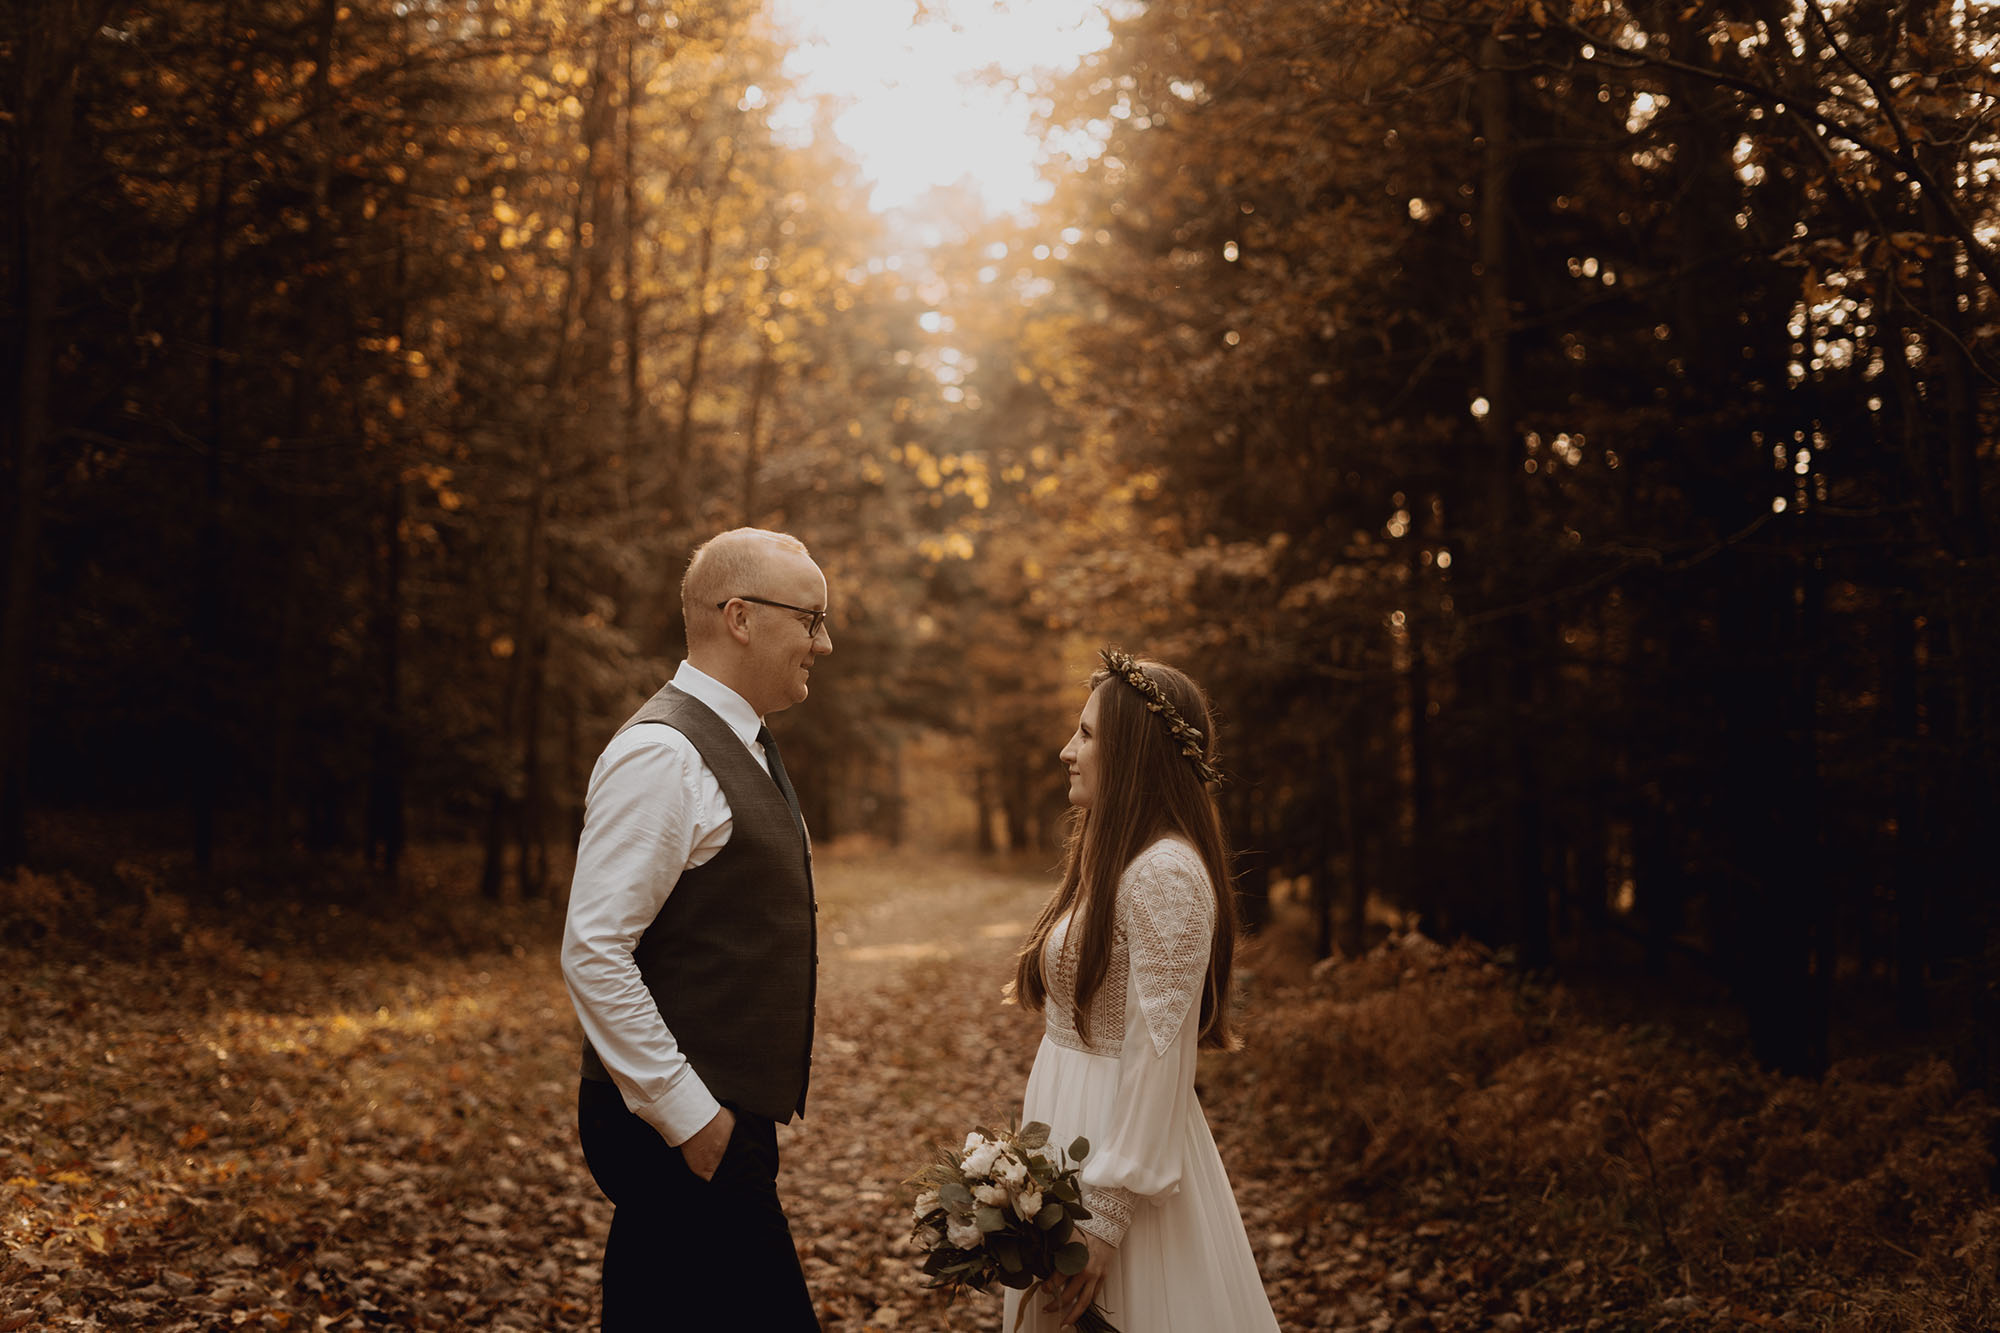 jesienna sesja slubna00019 - Sesja poślubna wśród jesiennych liści